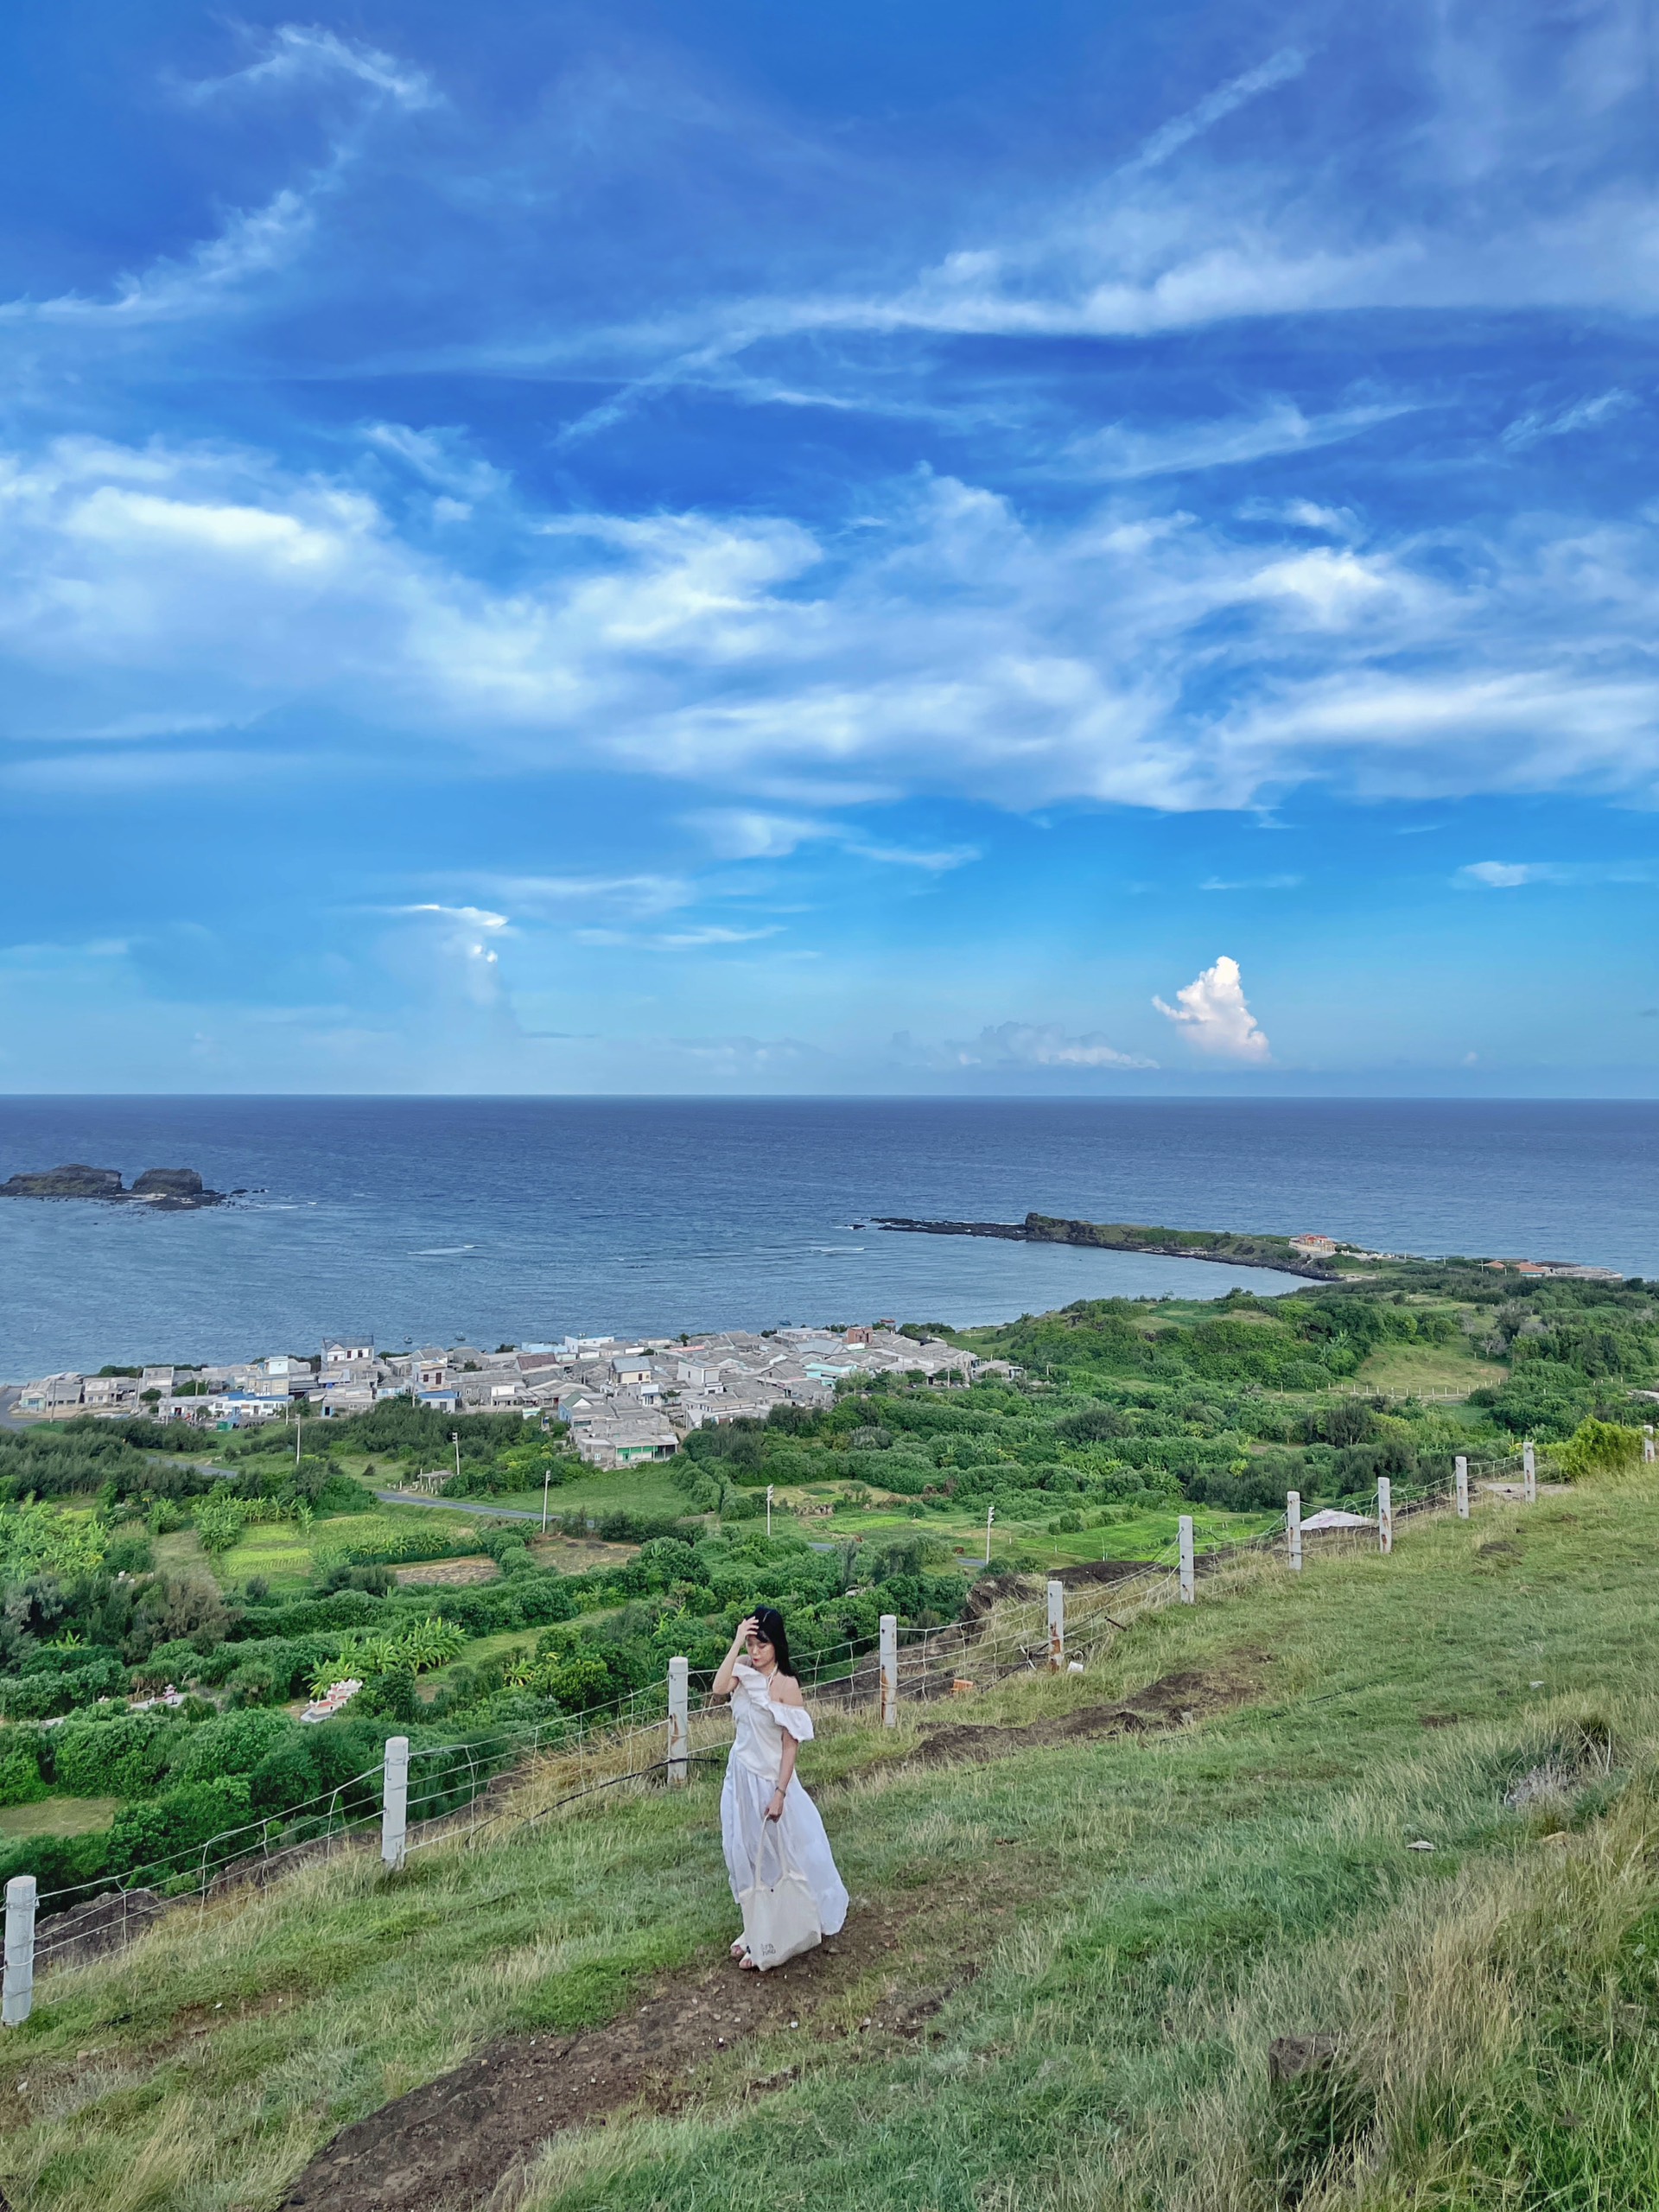 Đảo Phú Quý bắt đầu vào mùa biển xanh nắng vàng, chỉ cần đứng vào là có ảnh đẹp- Ảnh 7.